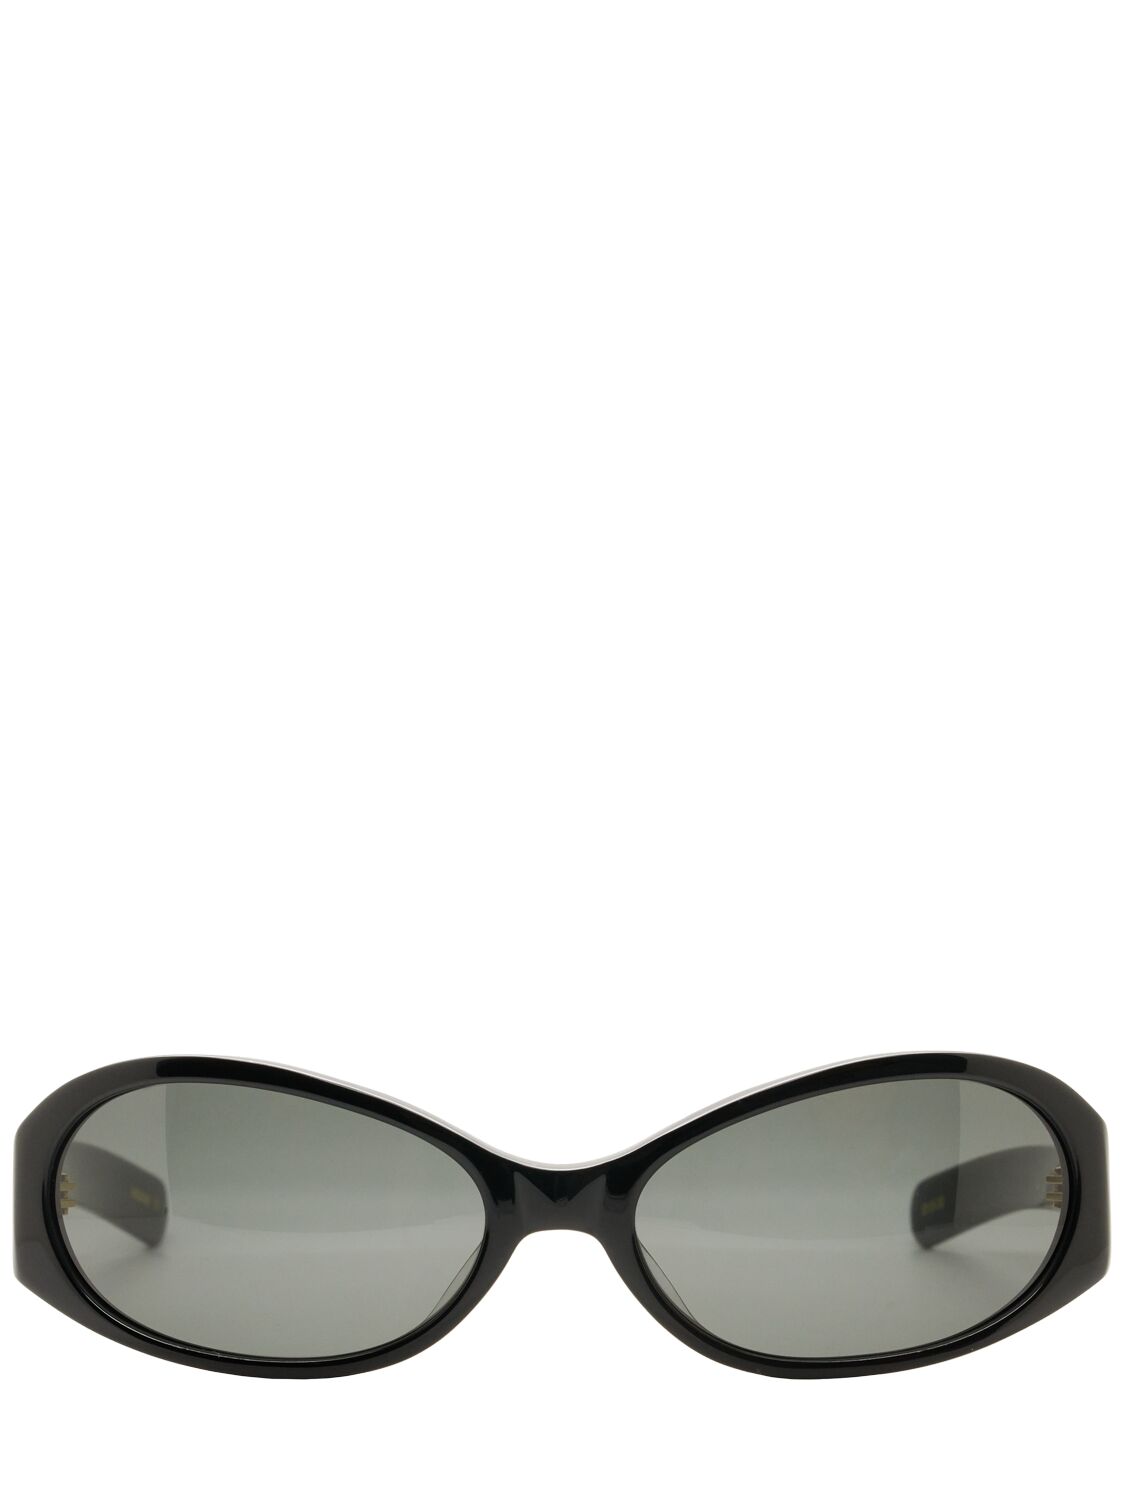 Flatlist Eyewear Office Opel Acetate Sunglasses In Black